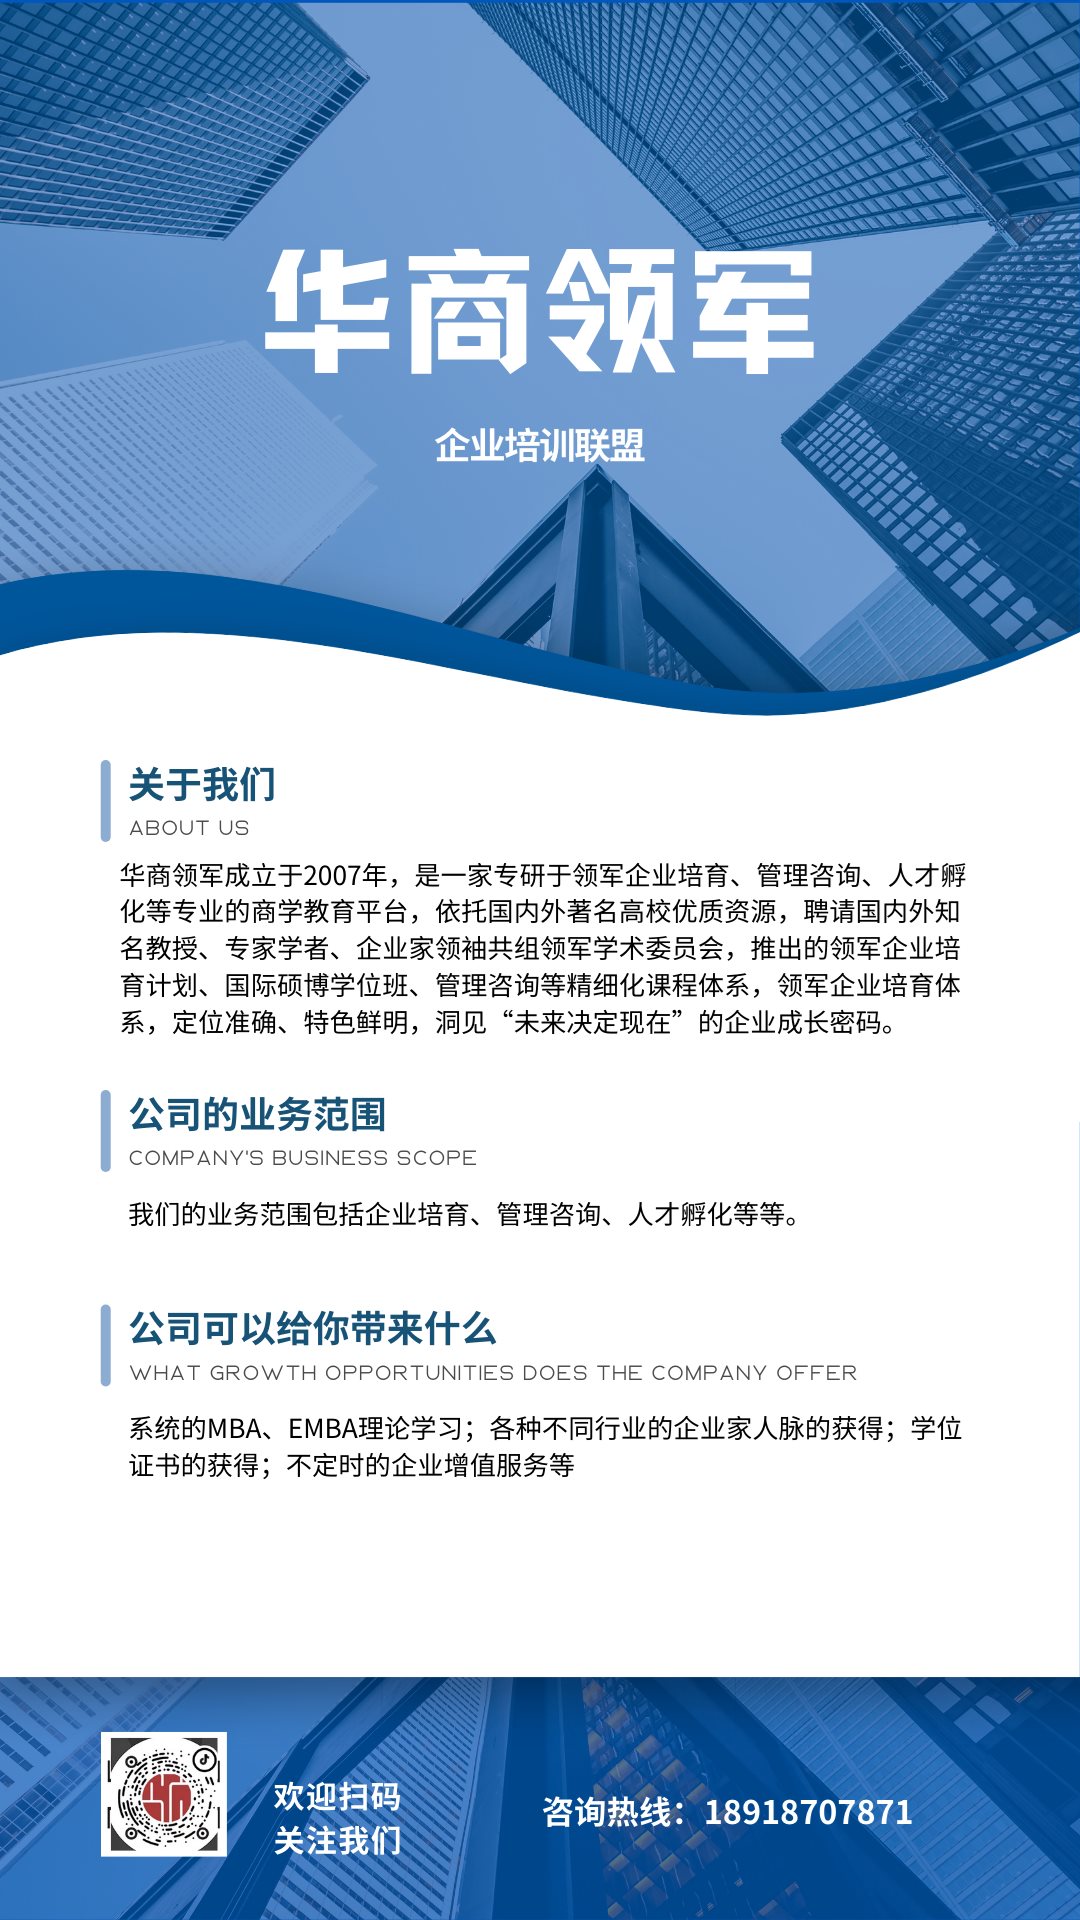 蓝白色商务企业宣传手机海报 (1).png